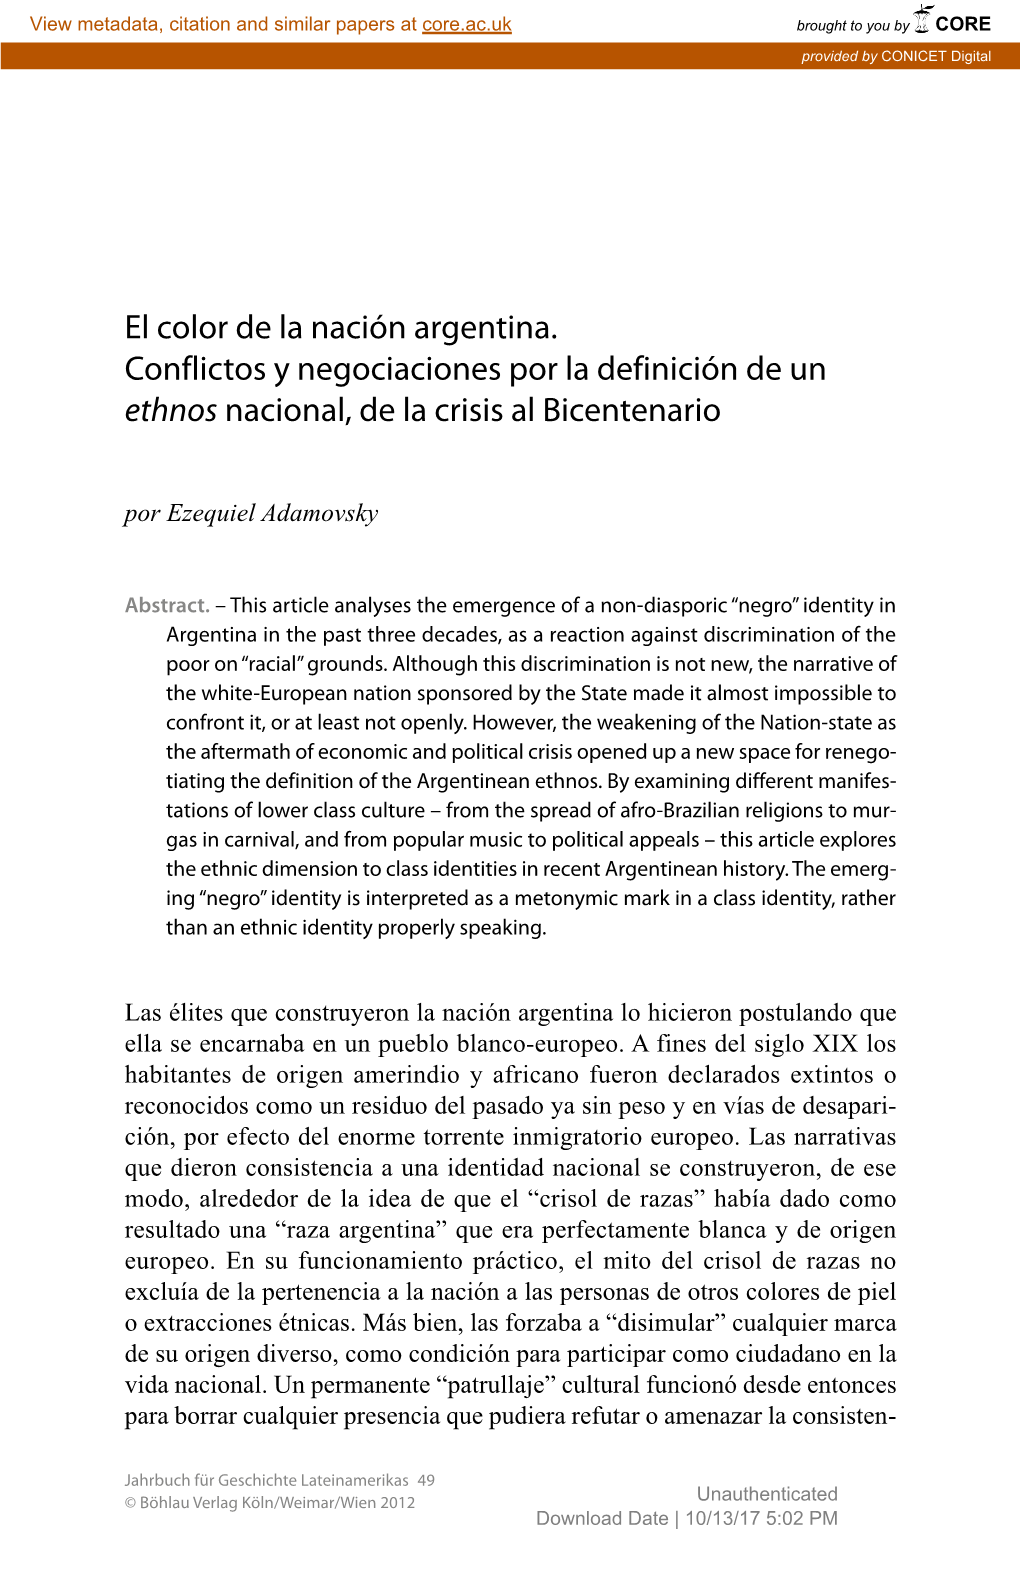 El Color De La Nación Argentina. Conflictos Y Negociaciones Por La Definición De Un Ethnos Nacional, De La Crisis Al Bicentenario